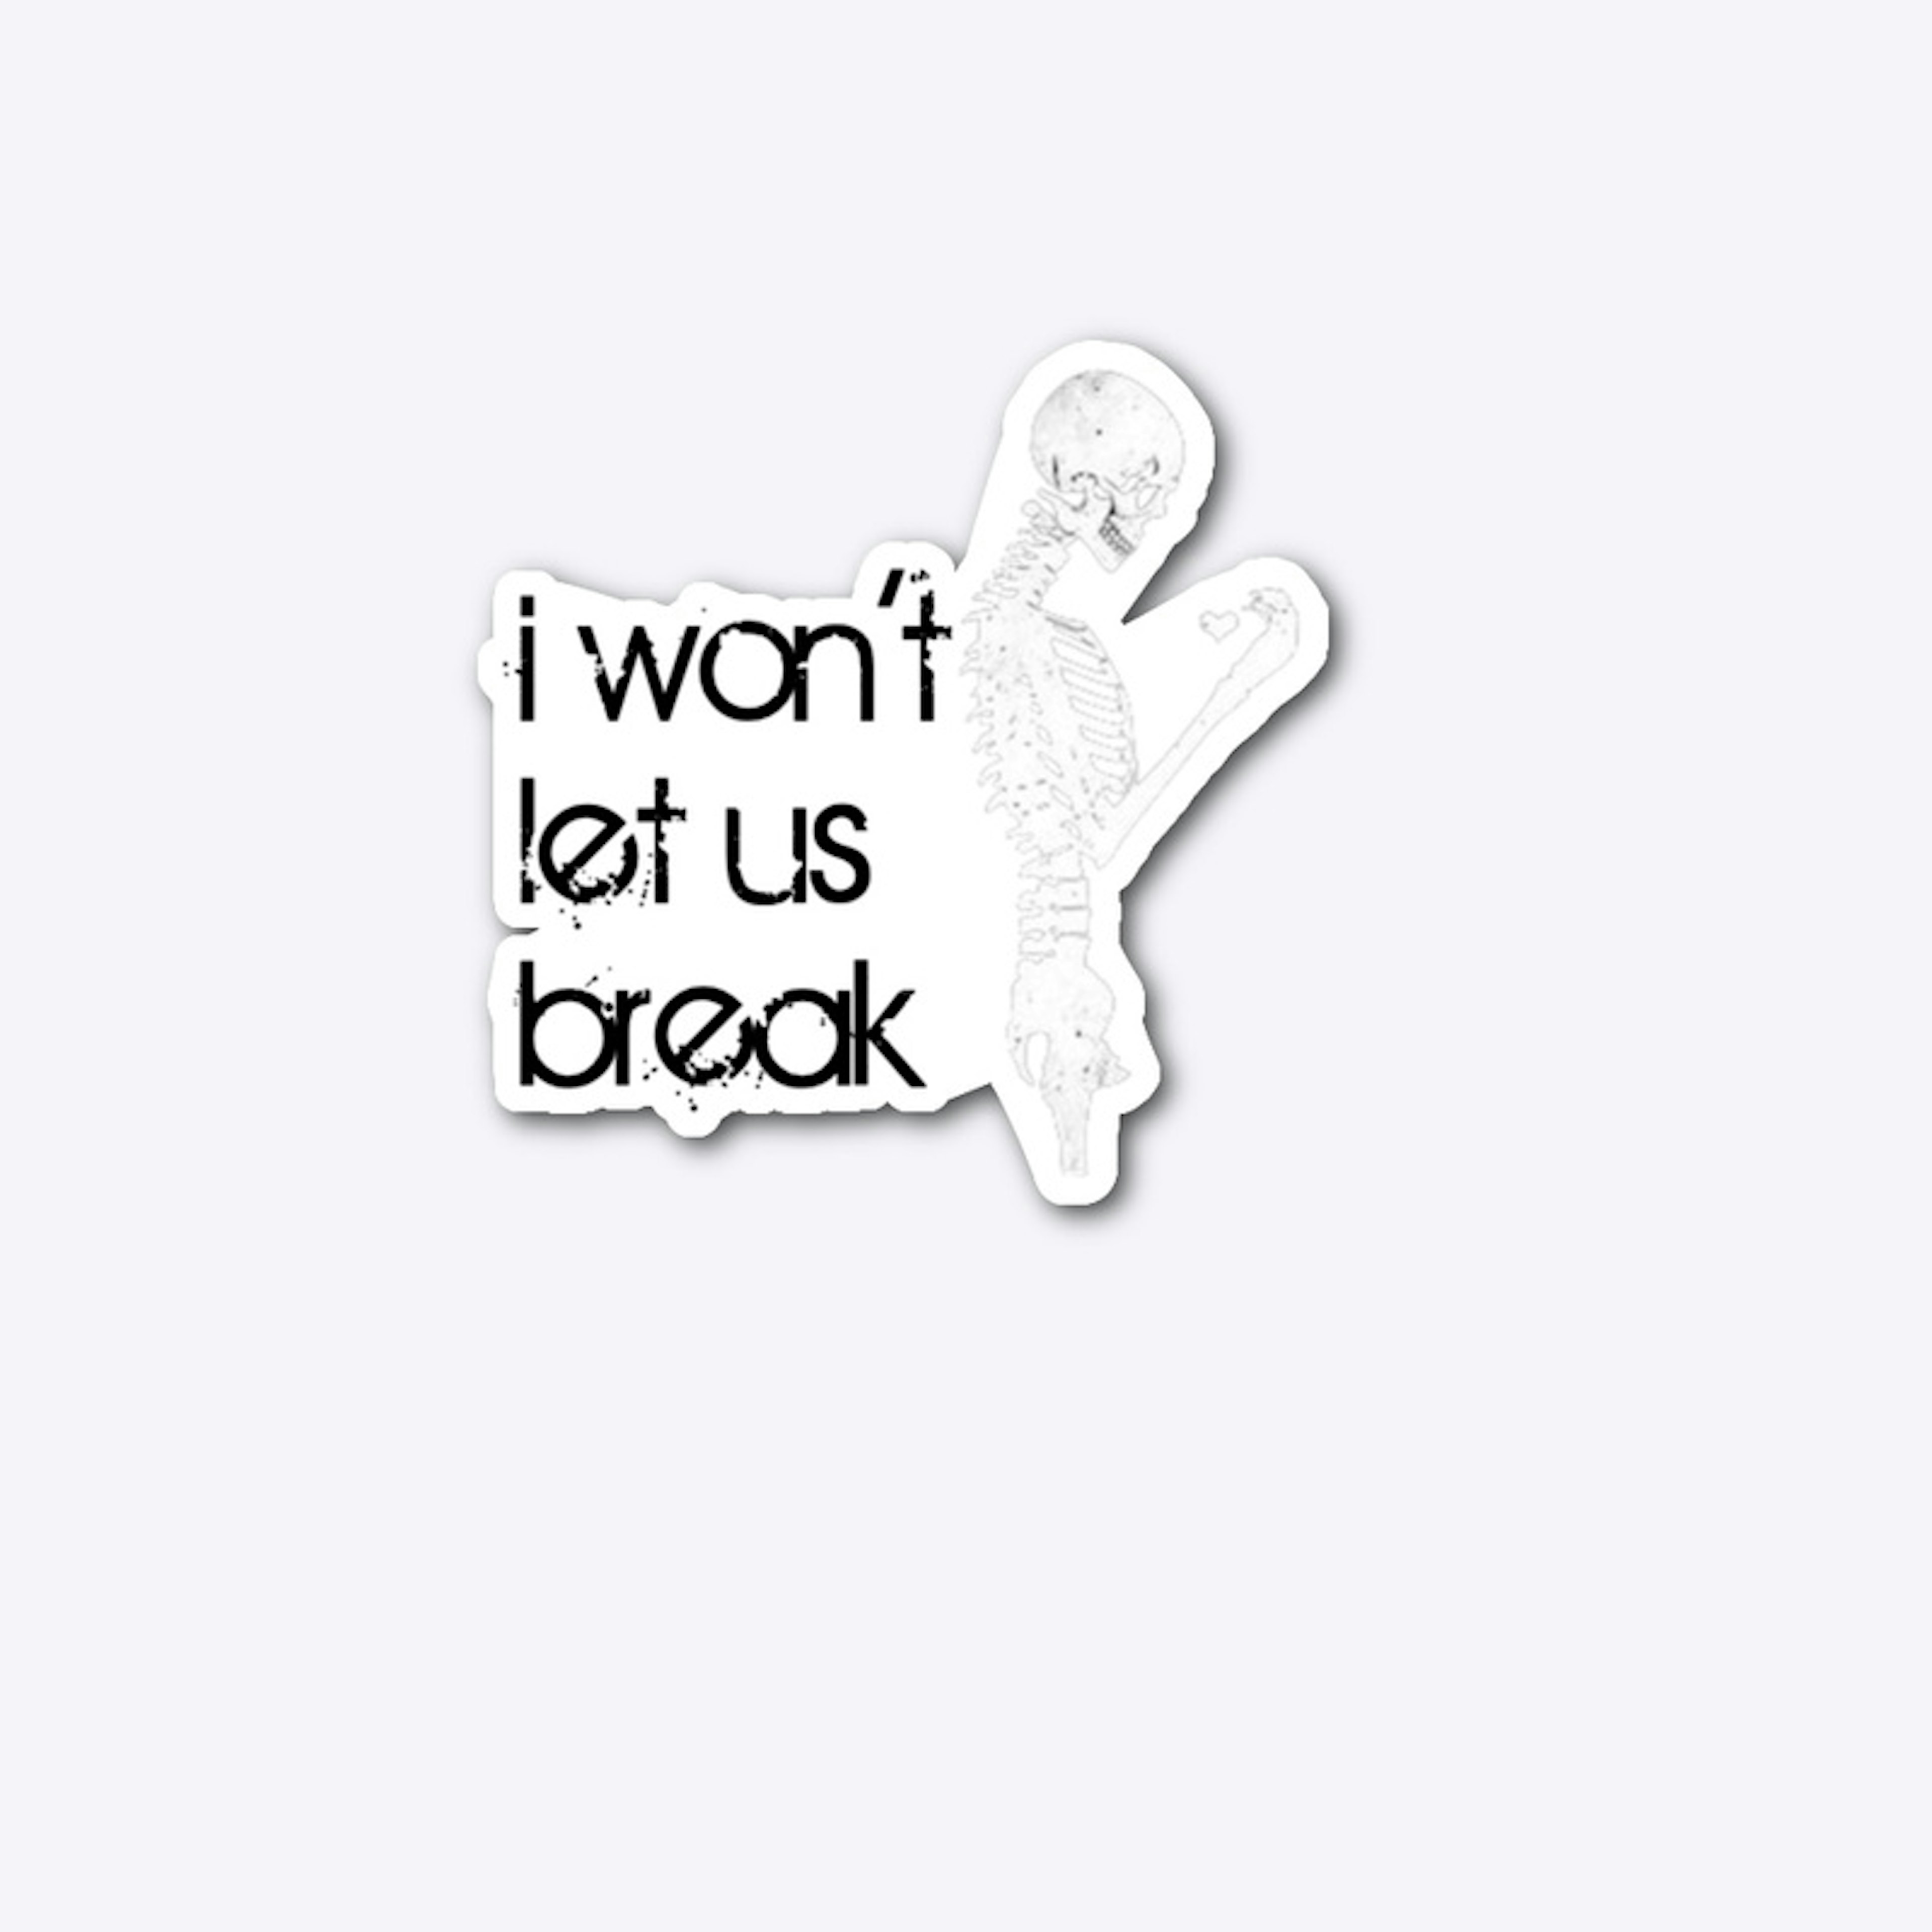 I won't let us break (sticker)